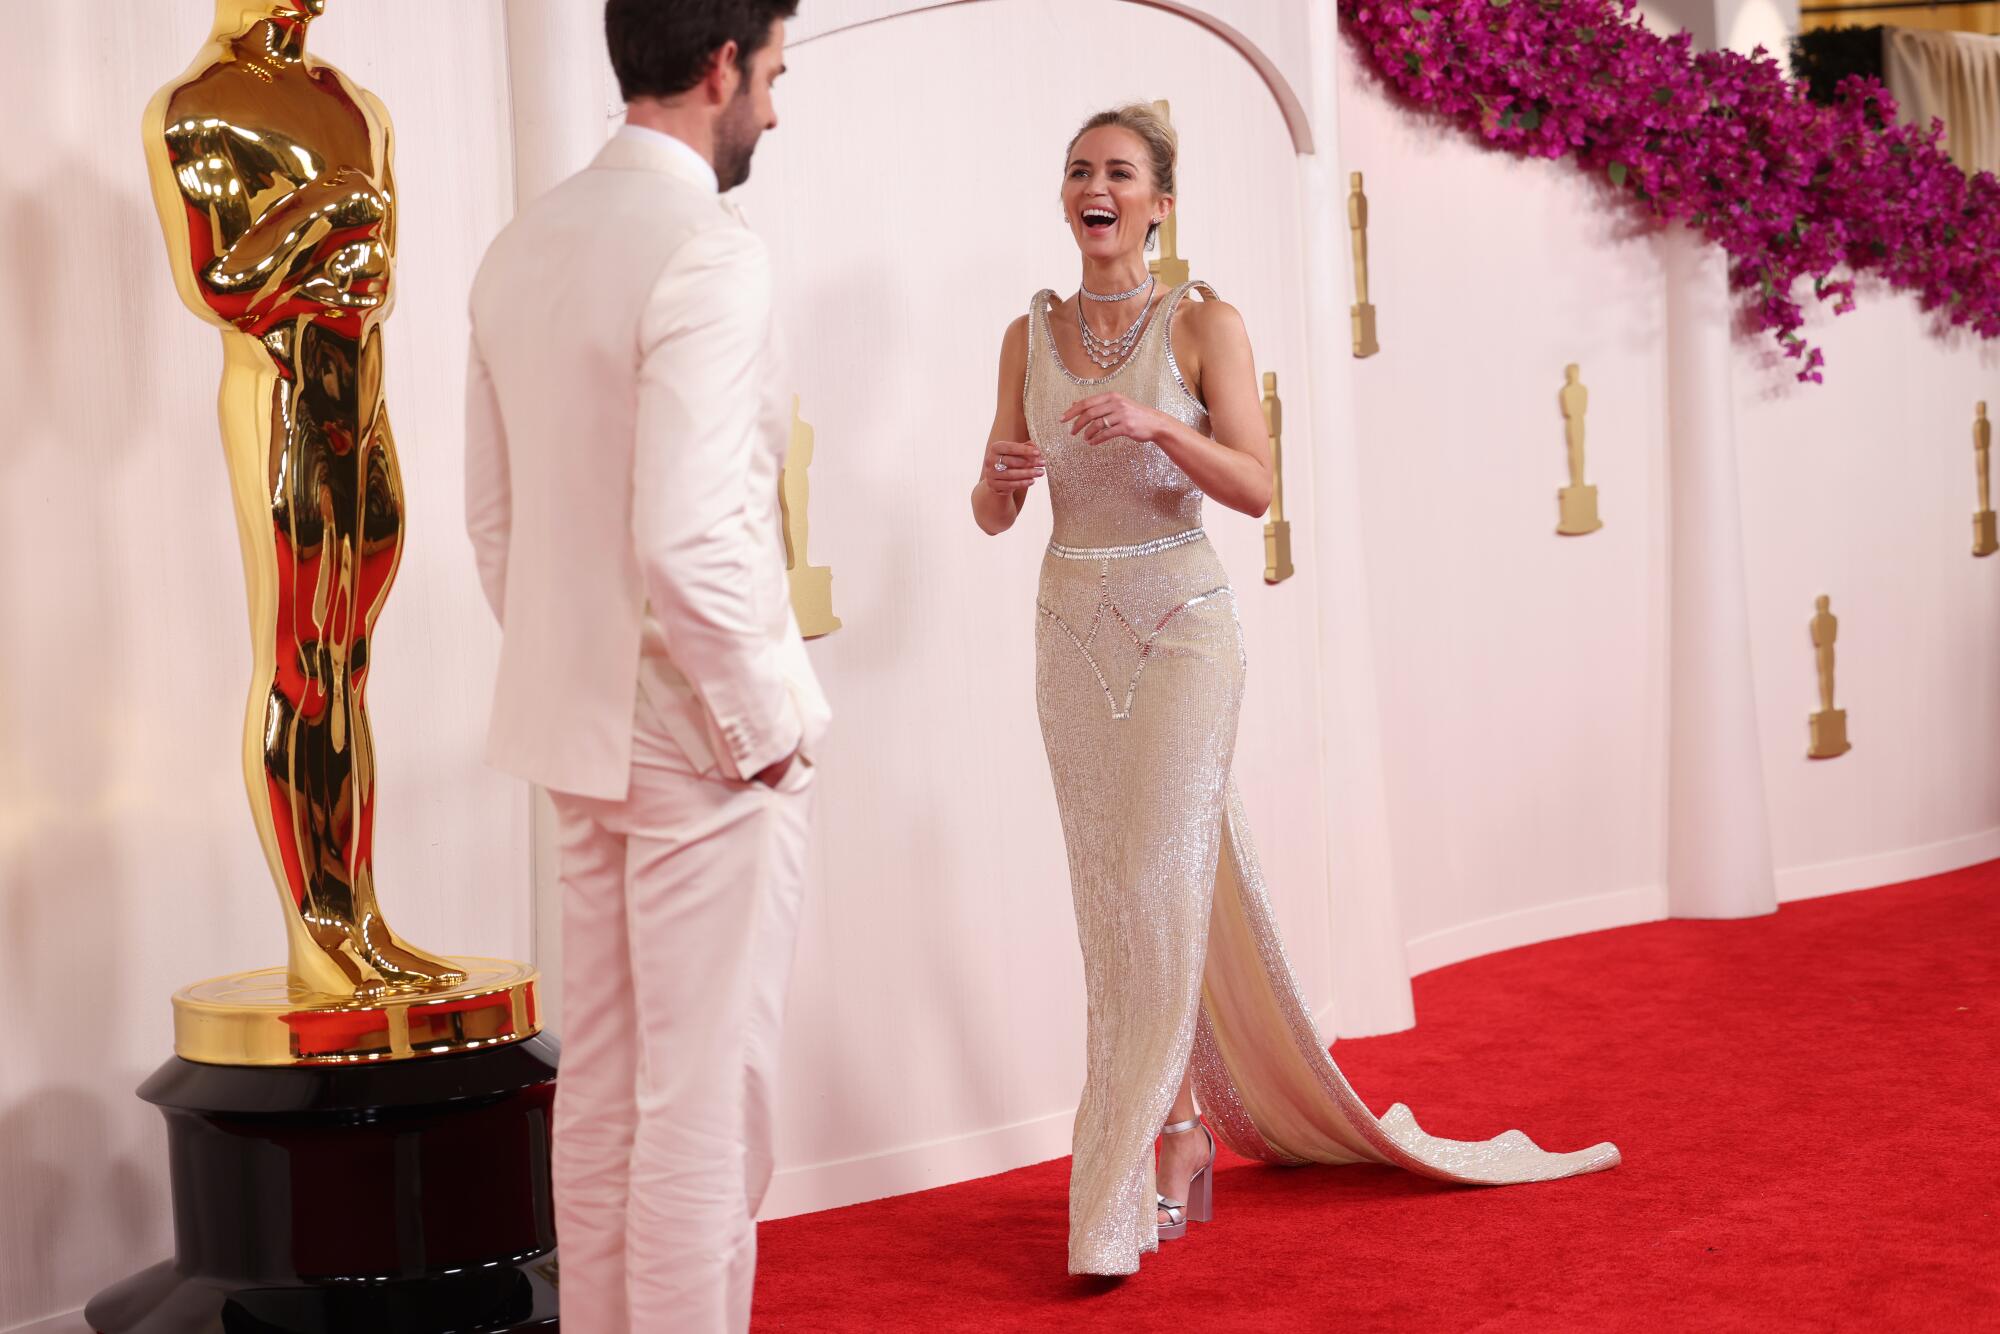 John Krasinski and Emily Blunt, both in white, laugh on the red carpet. 